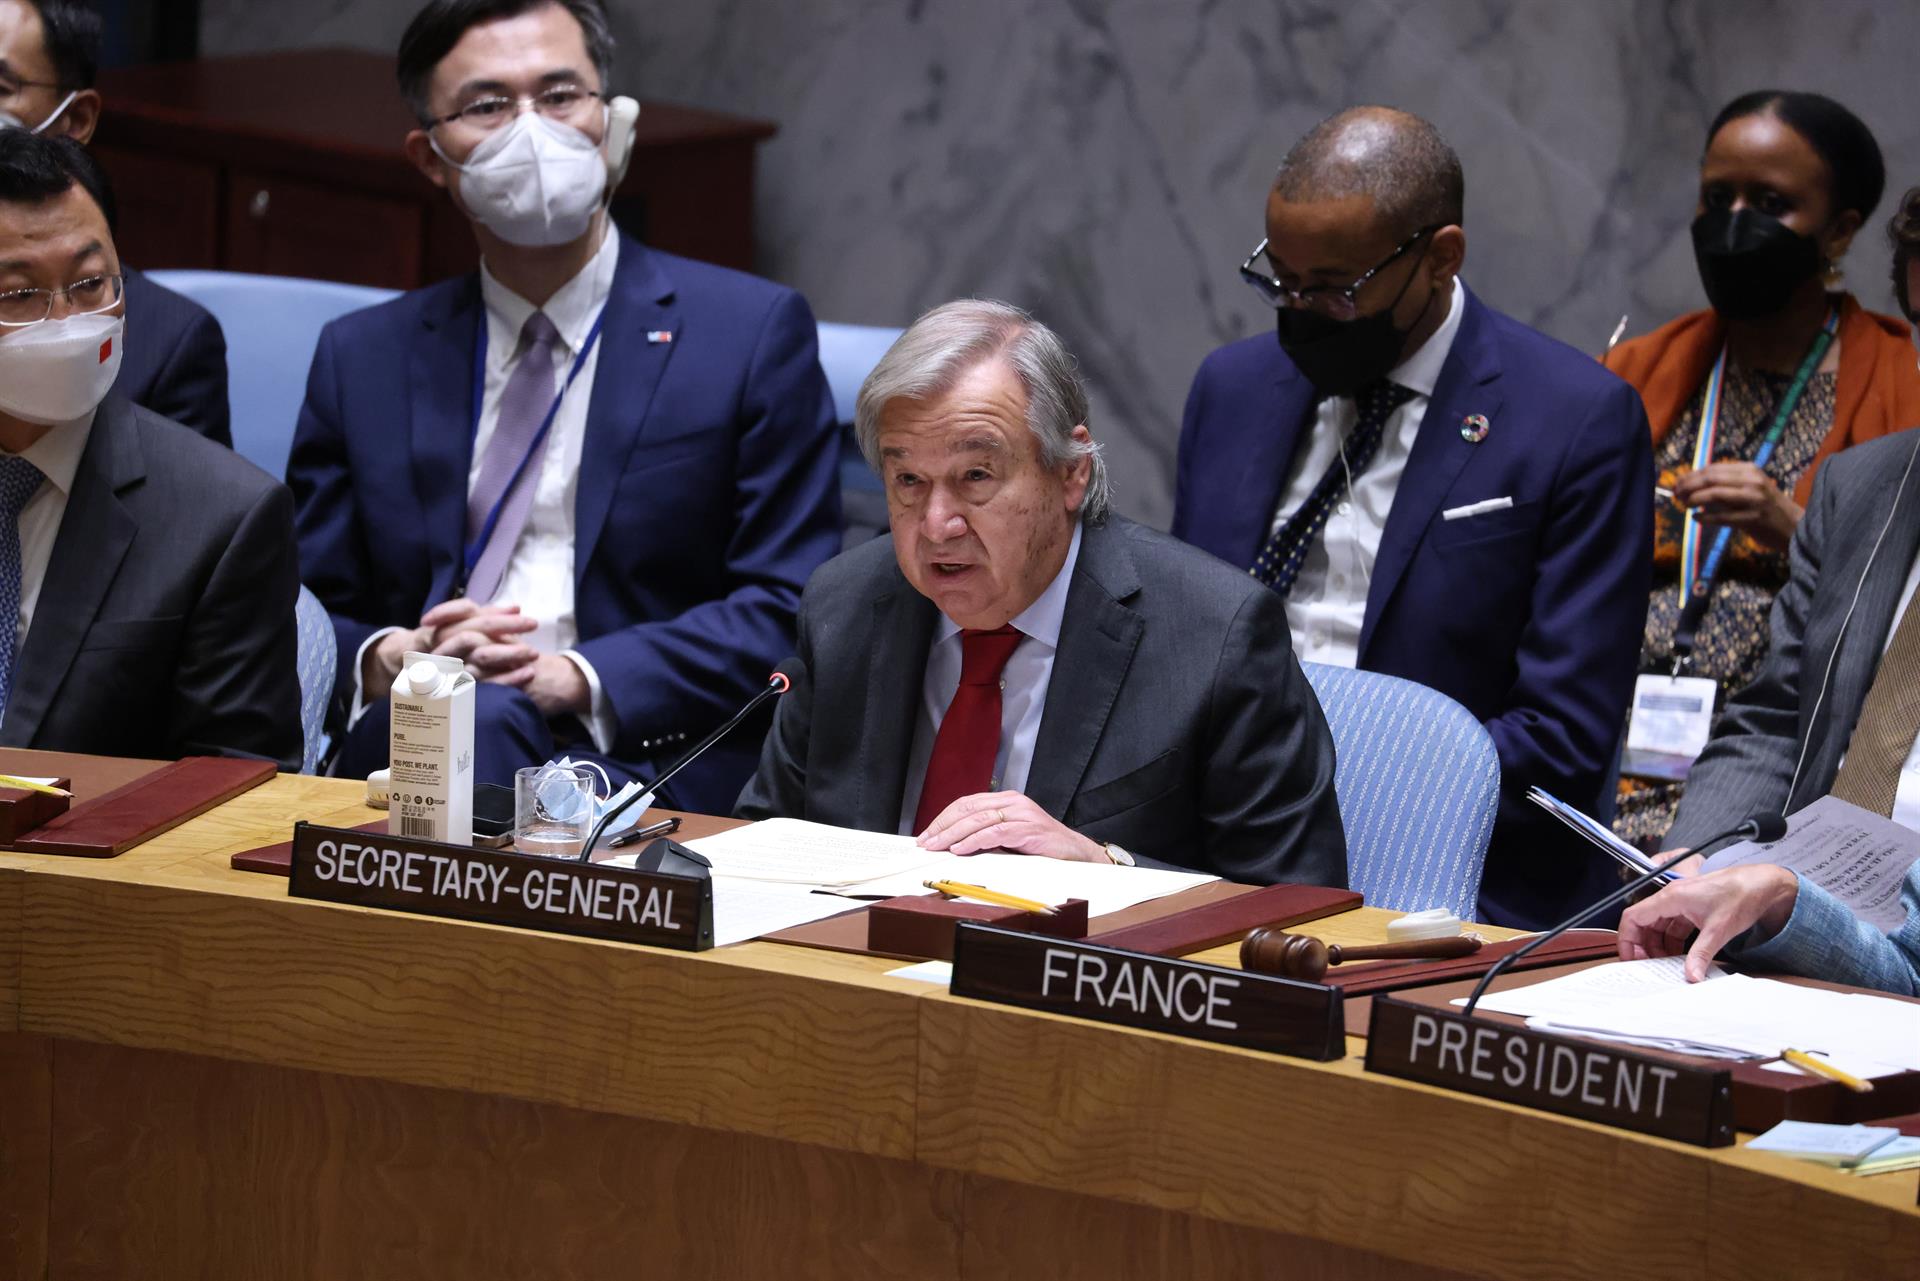 El secretario general de la ONU, António Guterres, habla durante una reunión ministerial del Consejo de Seguridad sobre el conflicto en Ucrania, este 22 de septiembre de 2022. EFE/Justin Lane